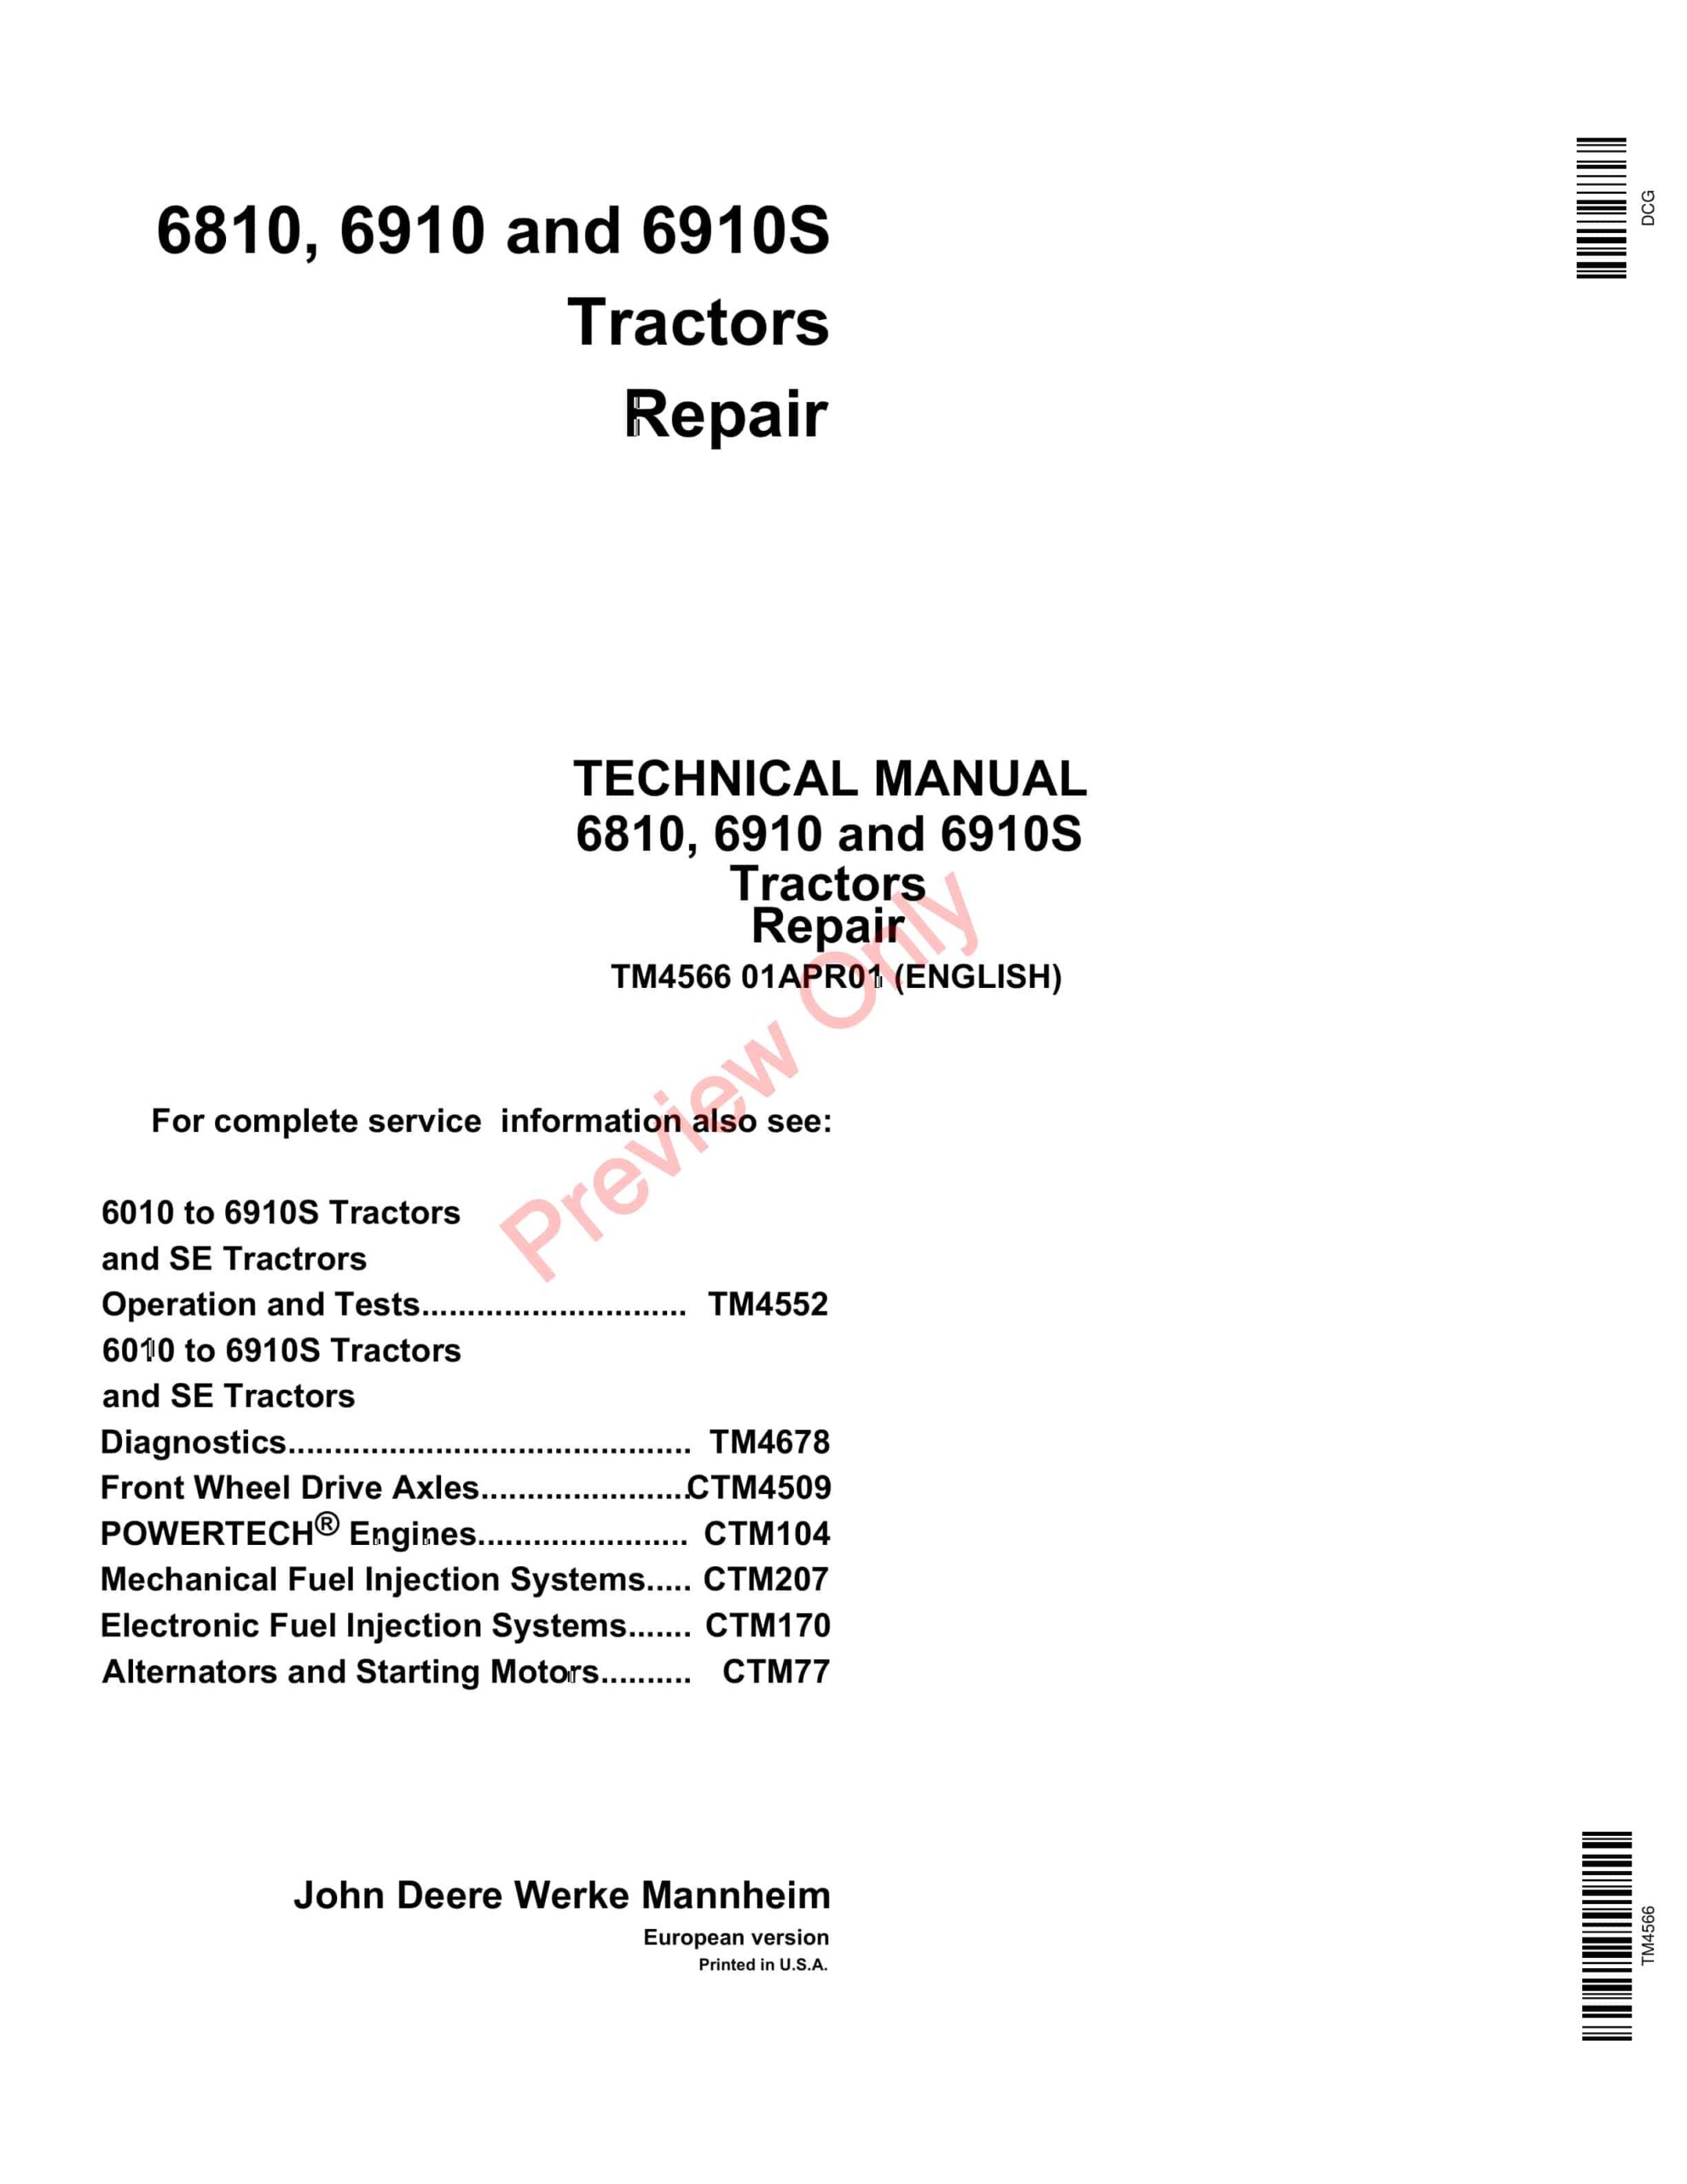 John Deere 6810, 6910, and 6910S Tractors Technical Manual TM4566 01APR11-1